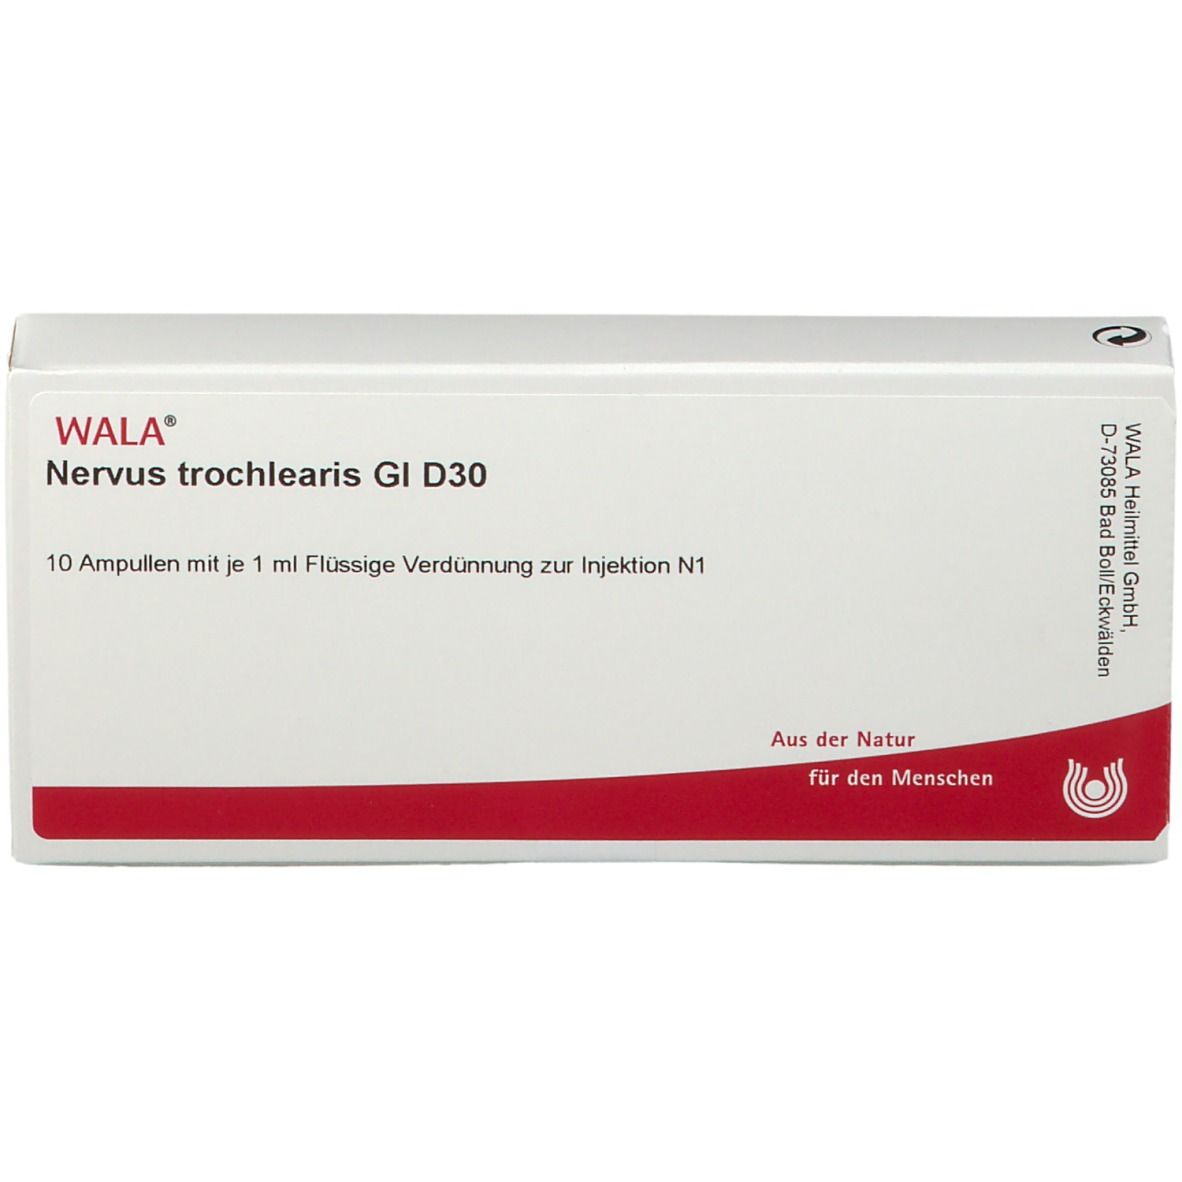 WALA® Nervus trochlearis Gl D 30